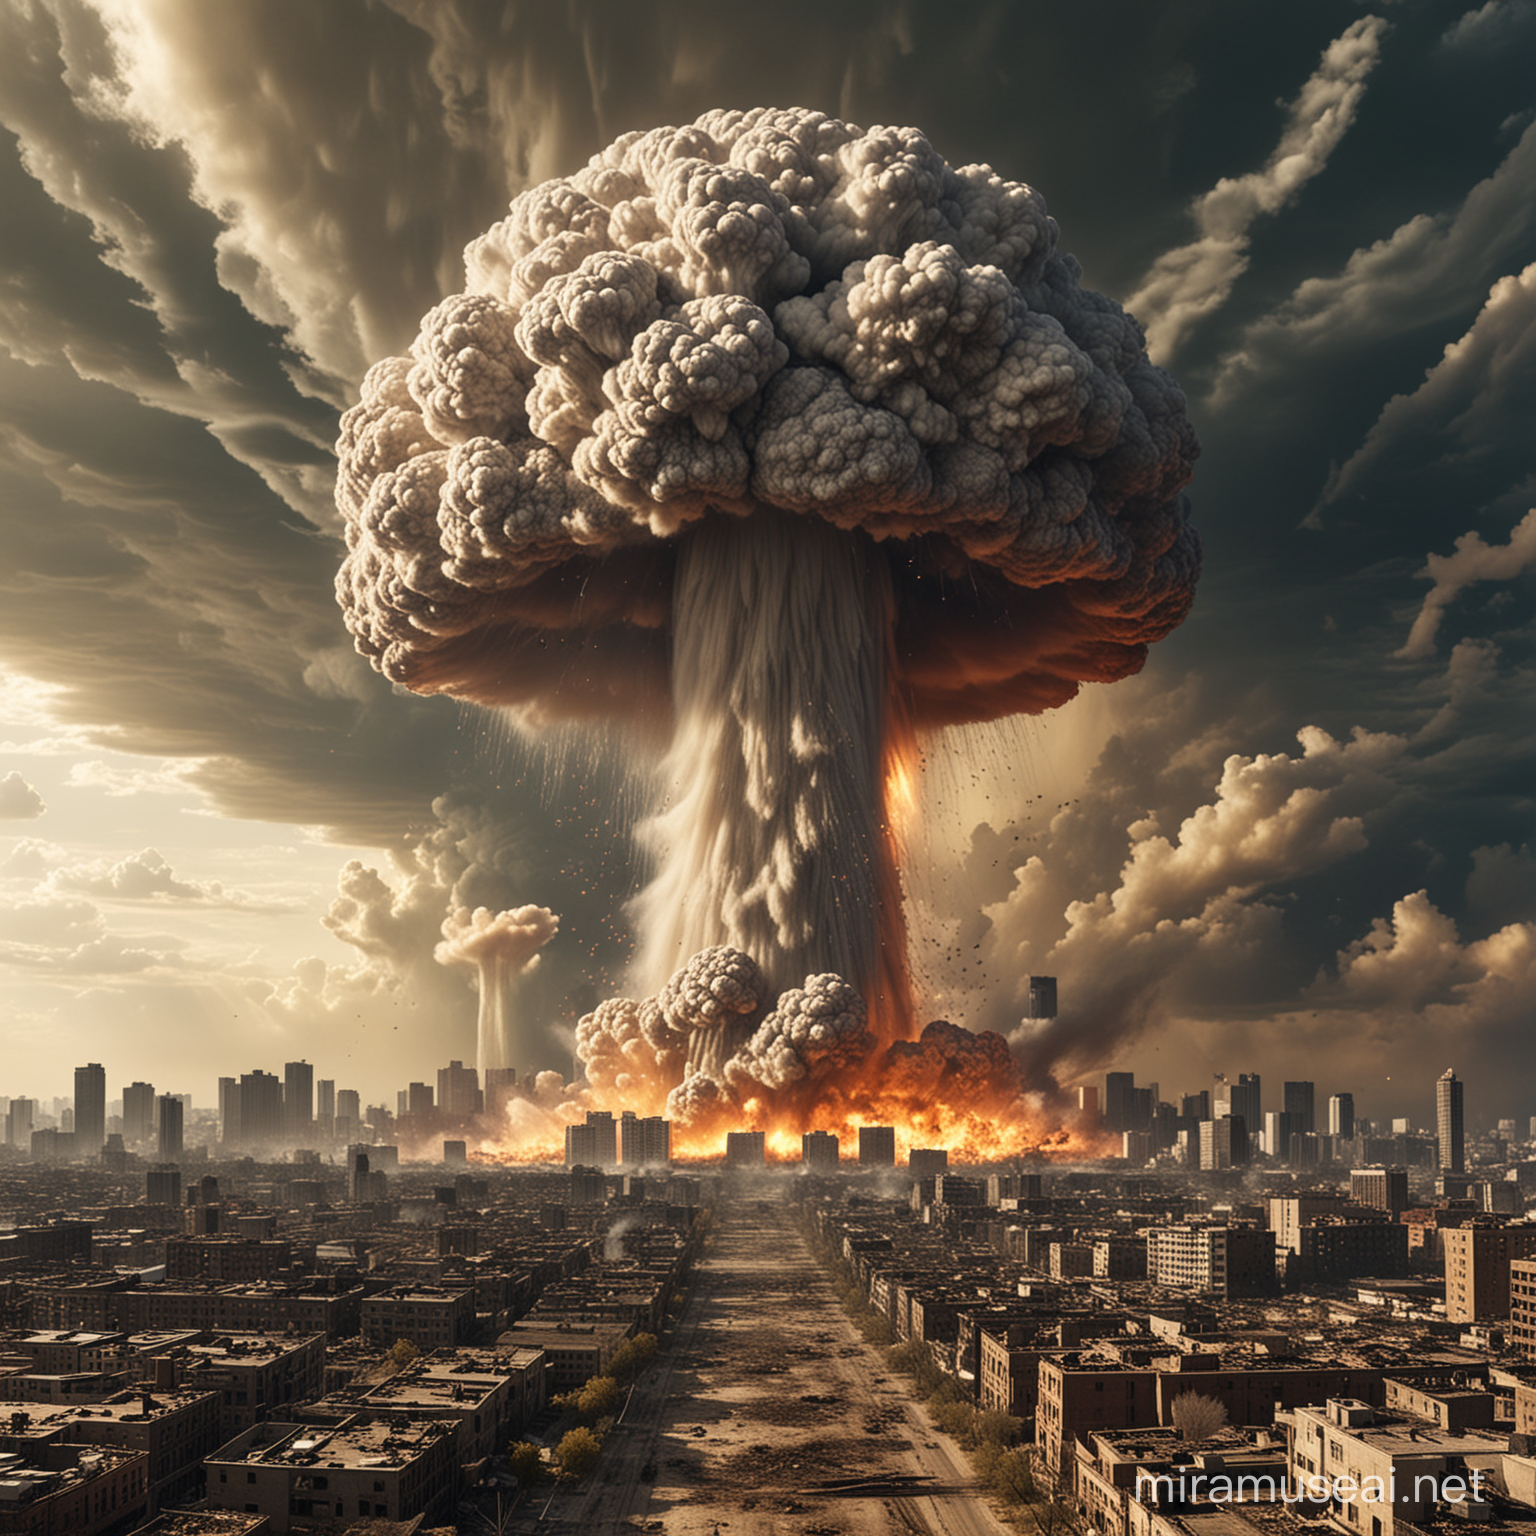 Nuclear blast on city mushroom cloud large devastation